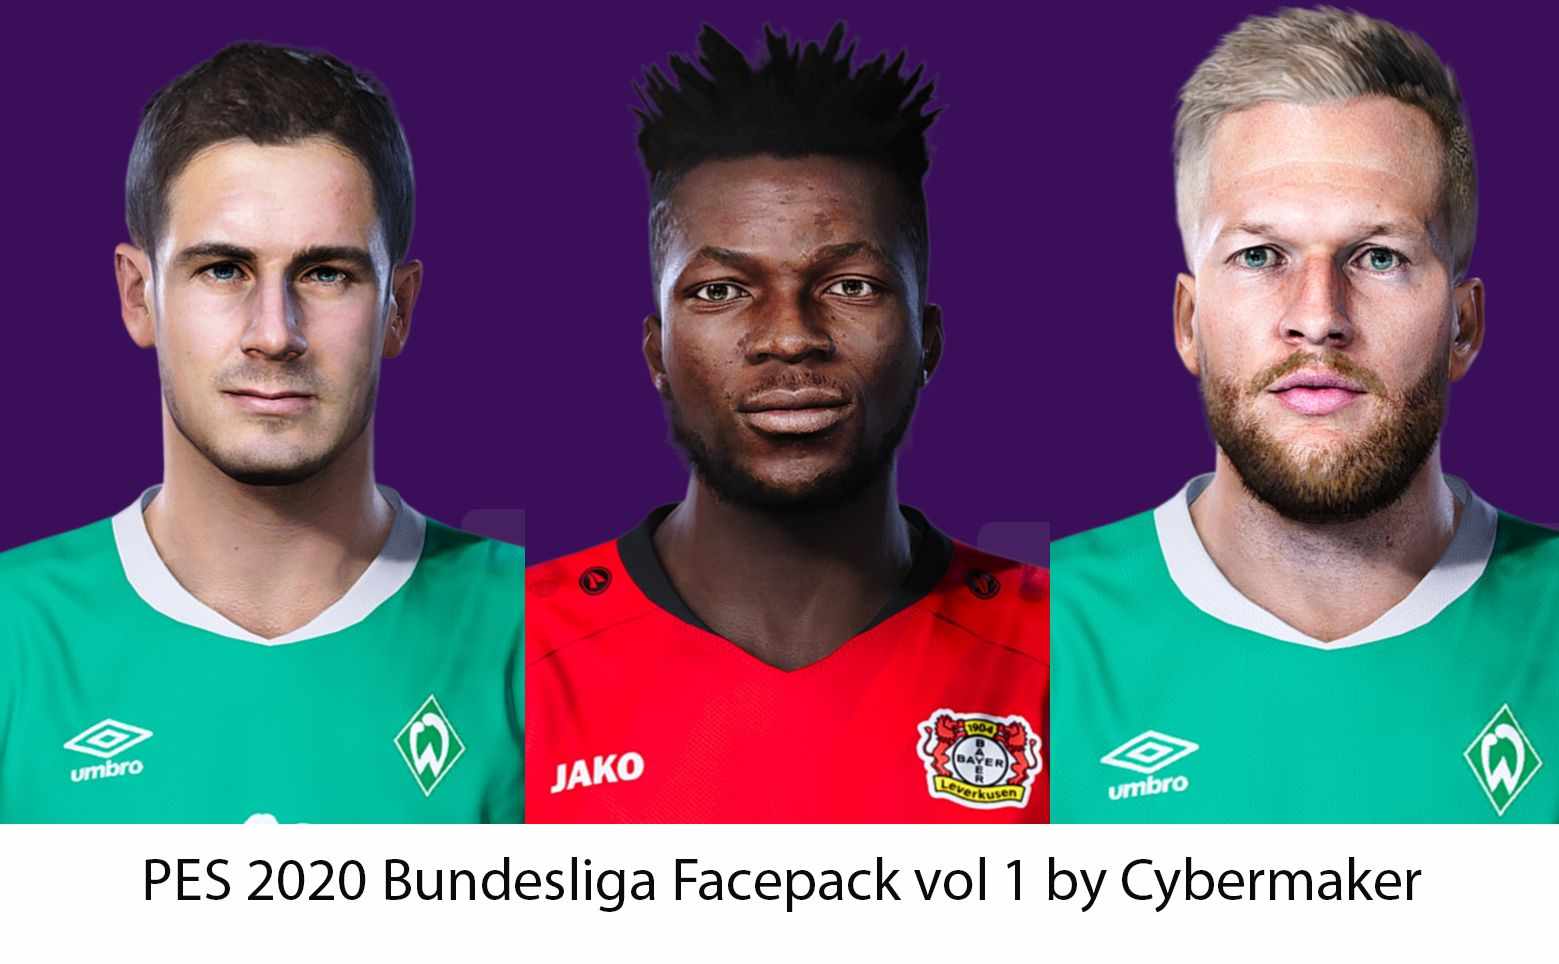 PES 2020 Bundesliga Facepack vol 1 by Cybermaker